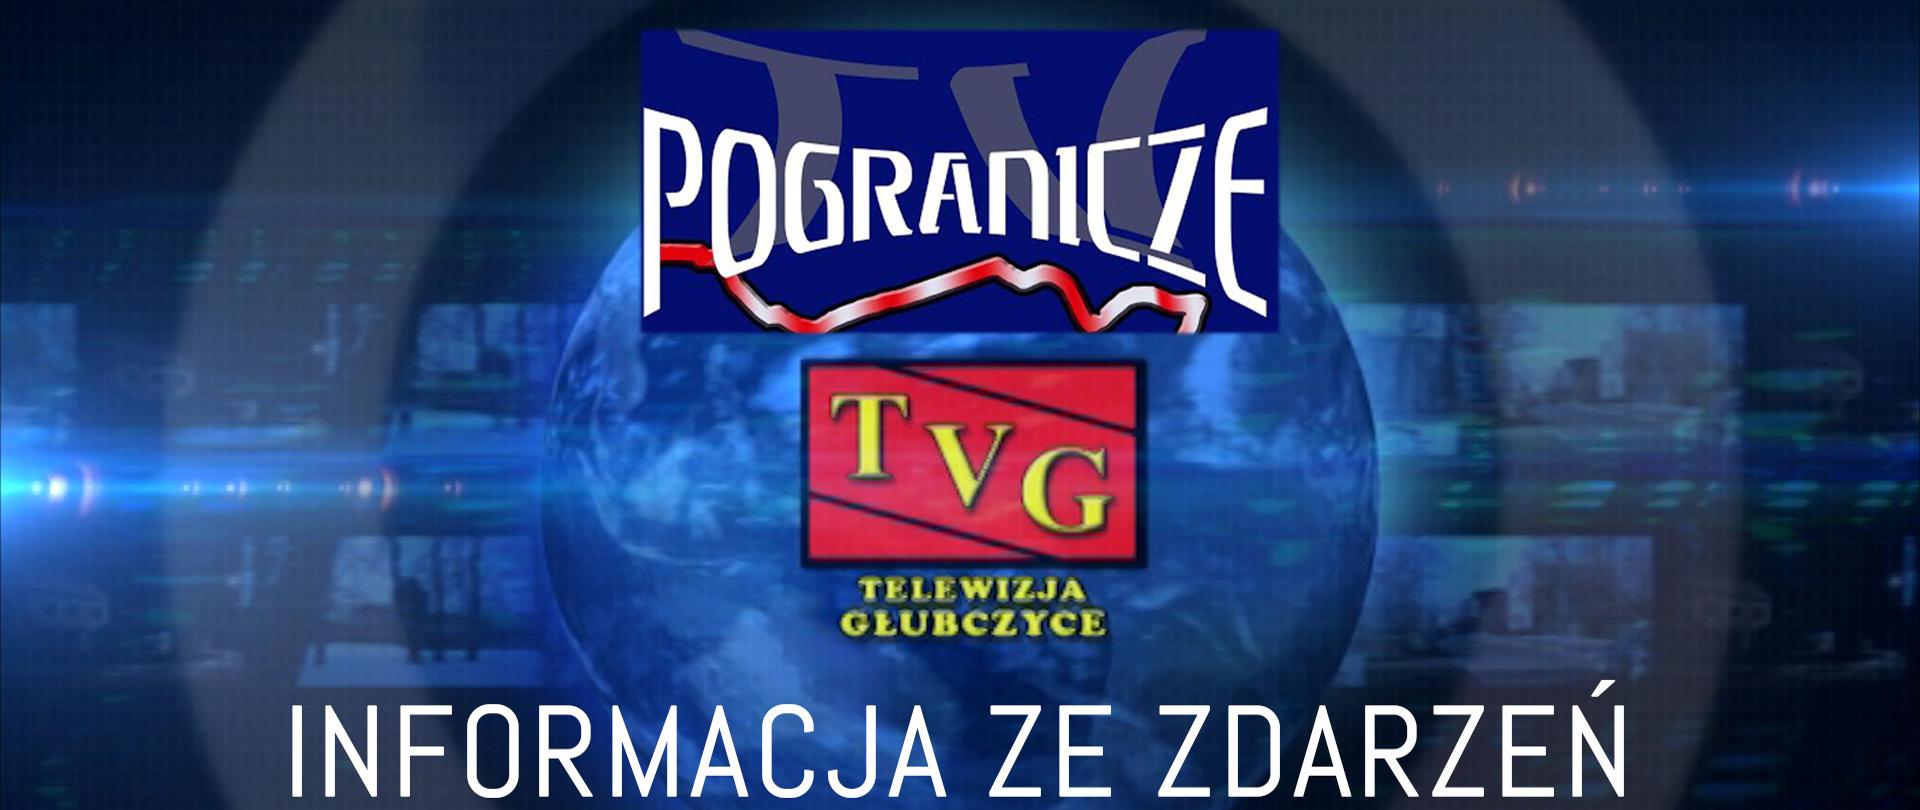 Infografika TV Głubczyce - Pogranicze prezentująca informacje ze zdarzeń KP PSP w Głubczycach.